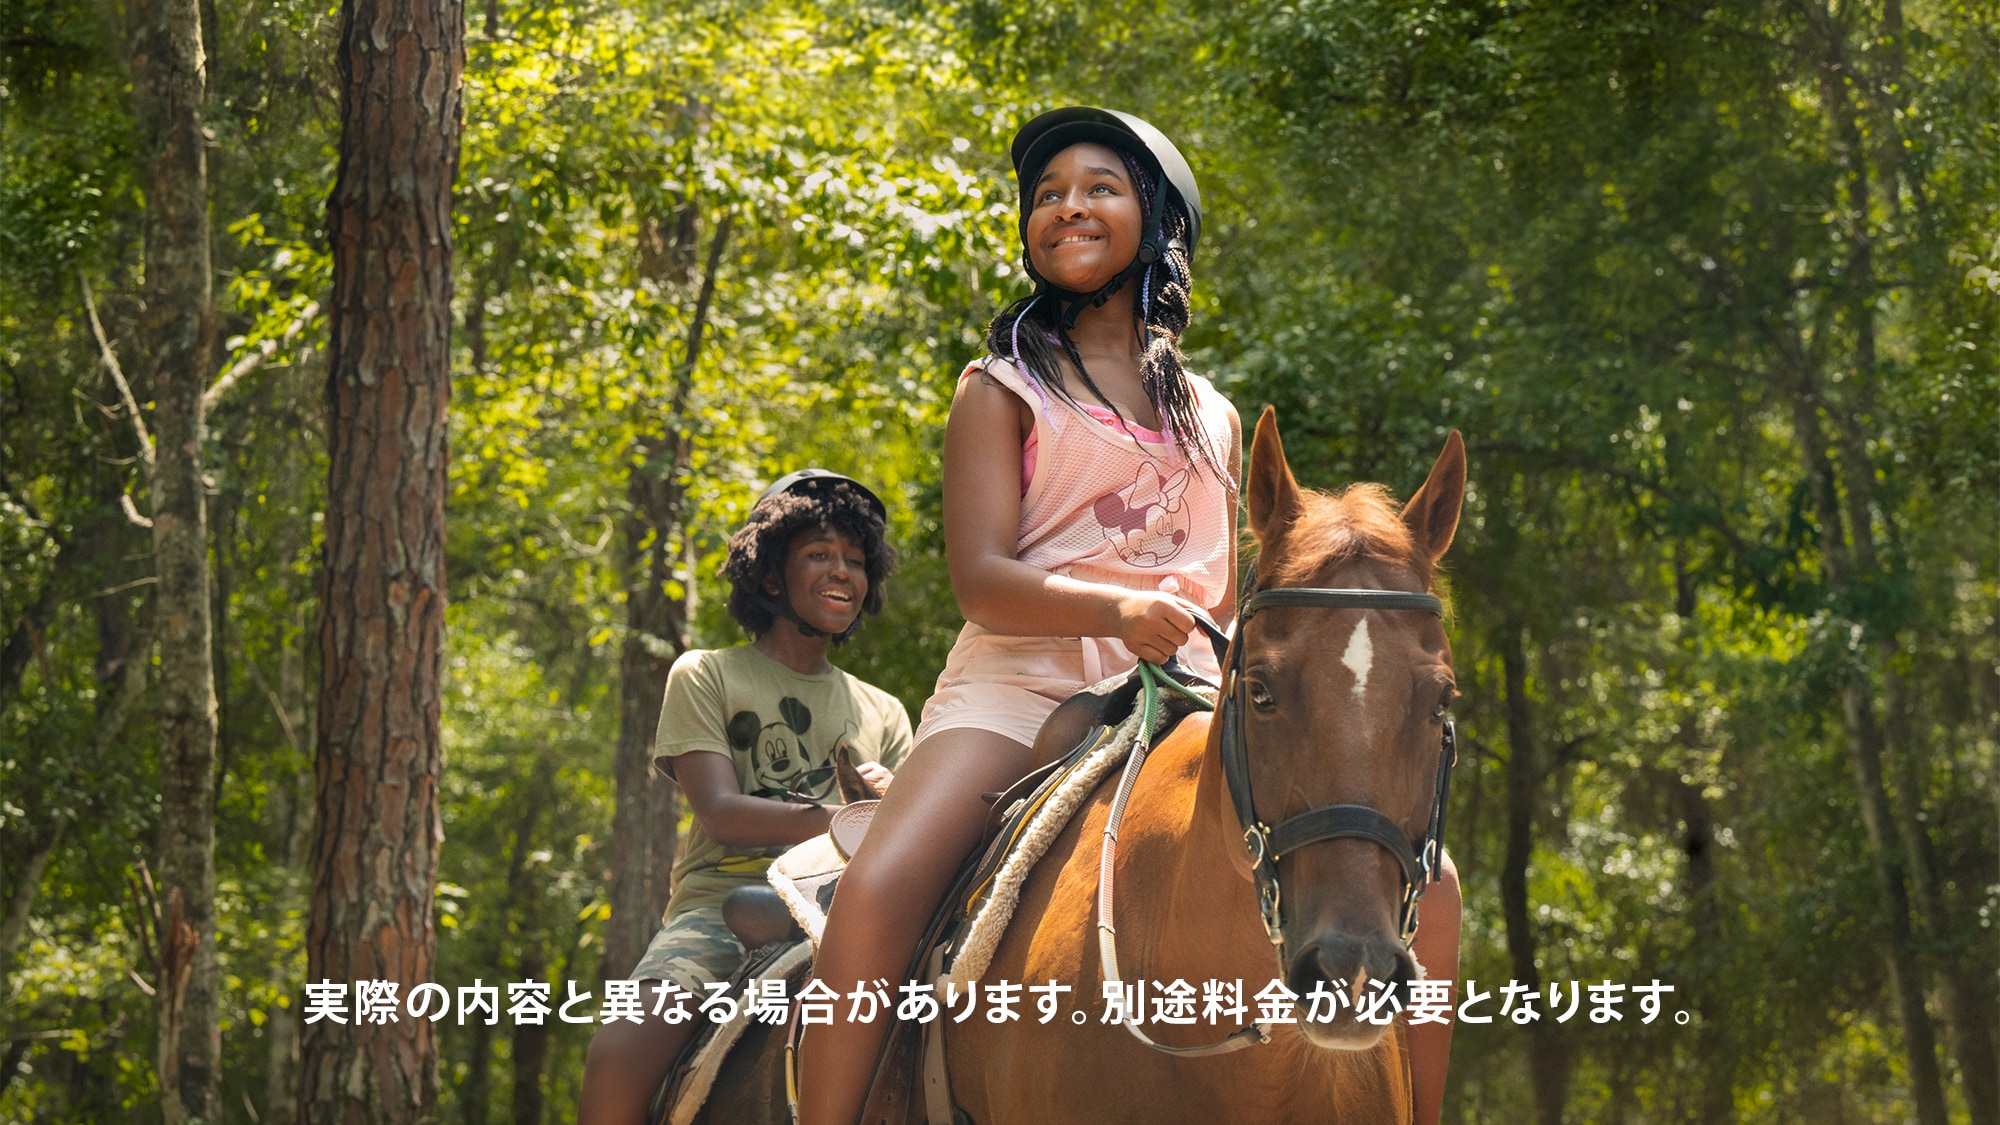 ディズニー・フォート・ウィルダネス・リゾートの森の中で馬に乗るゲスト